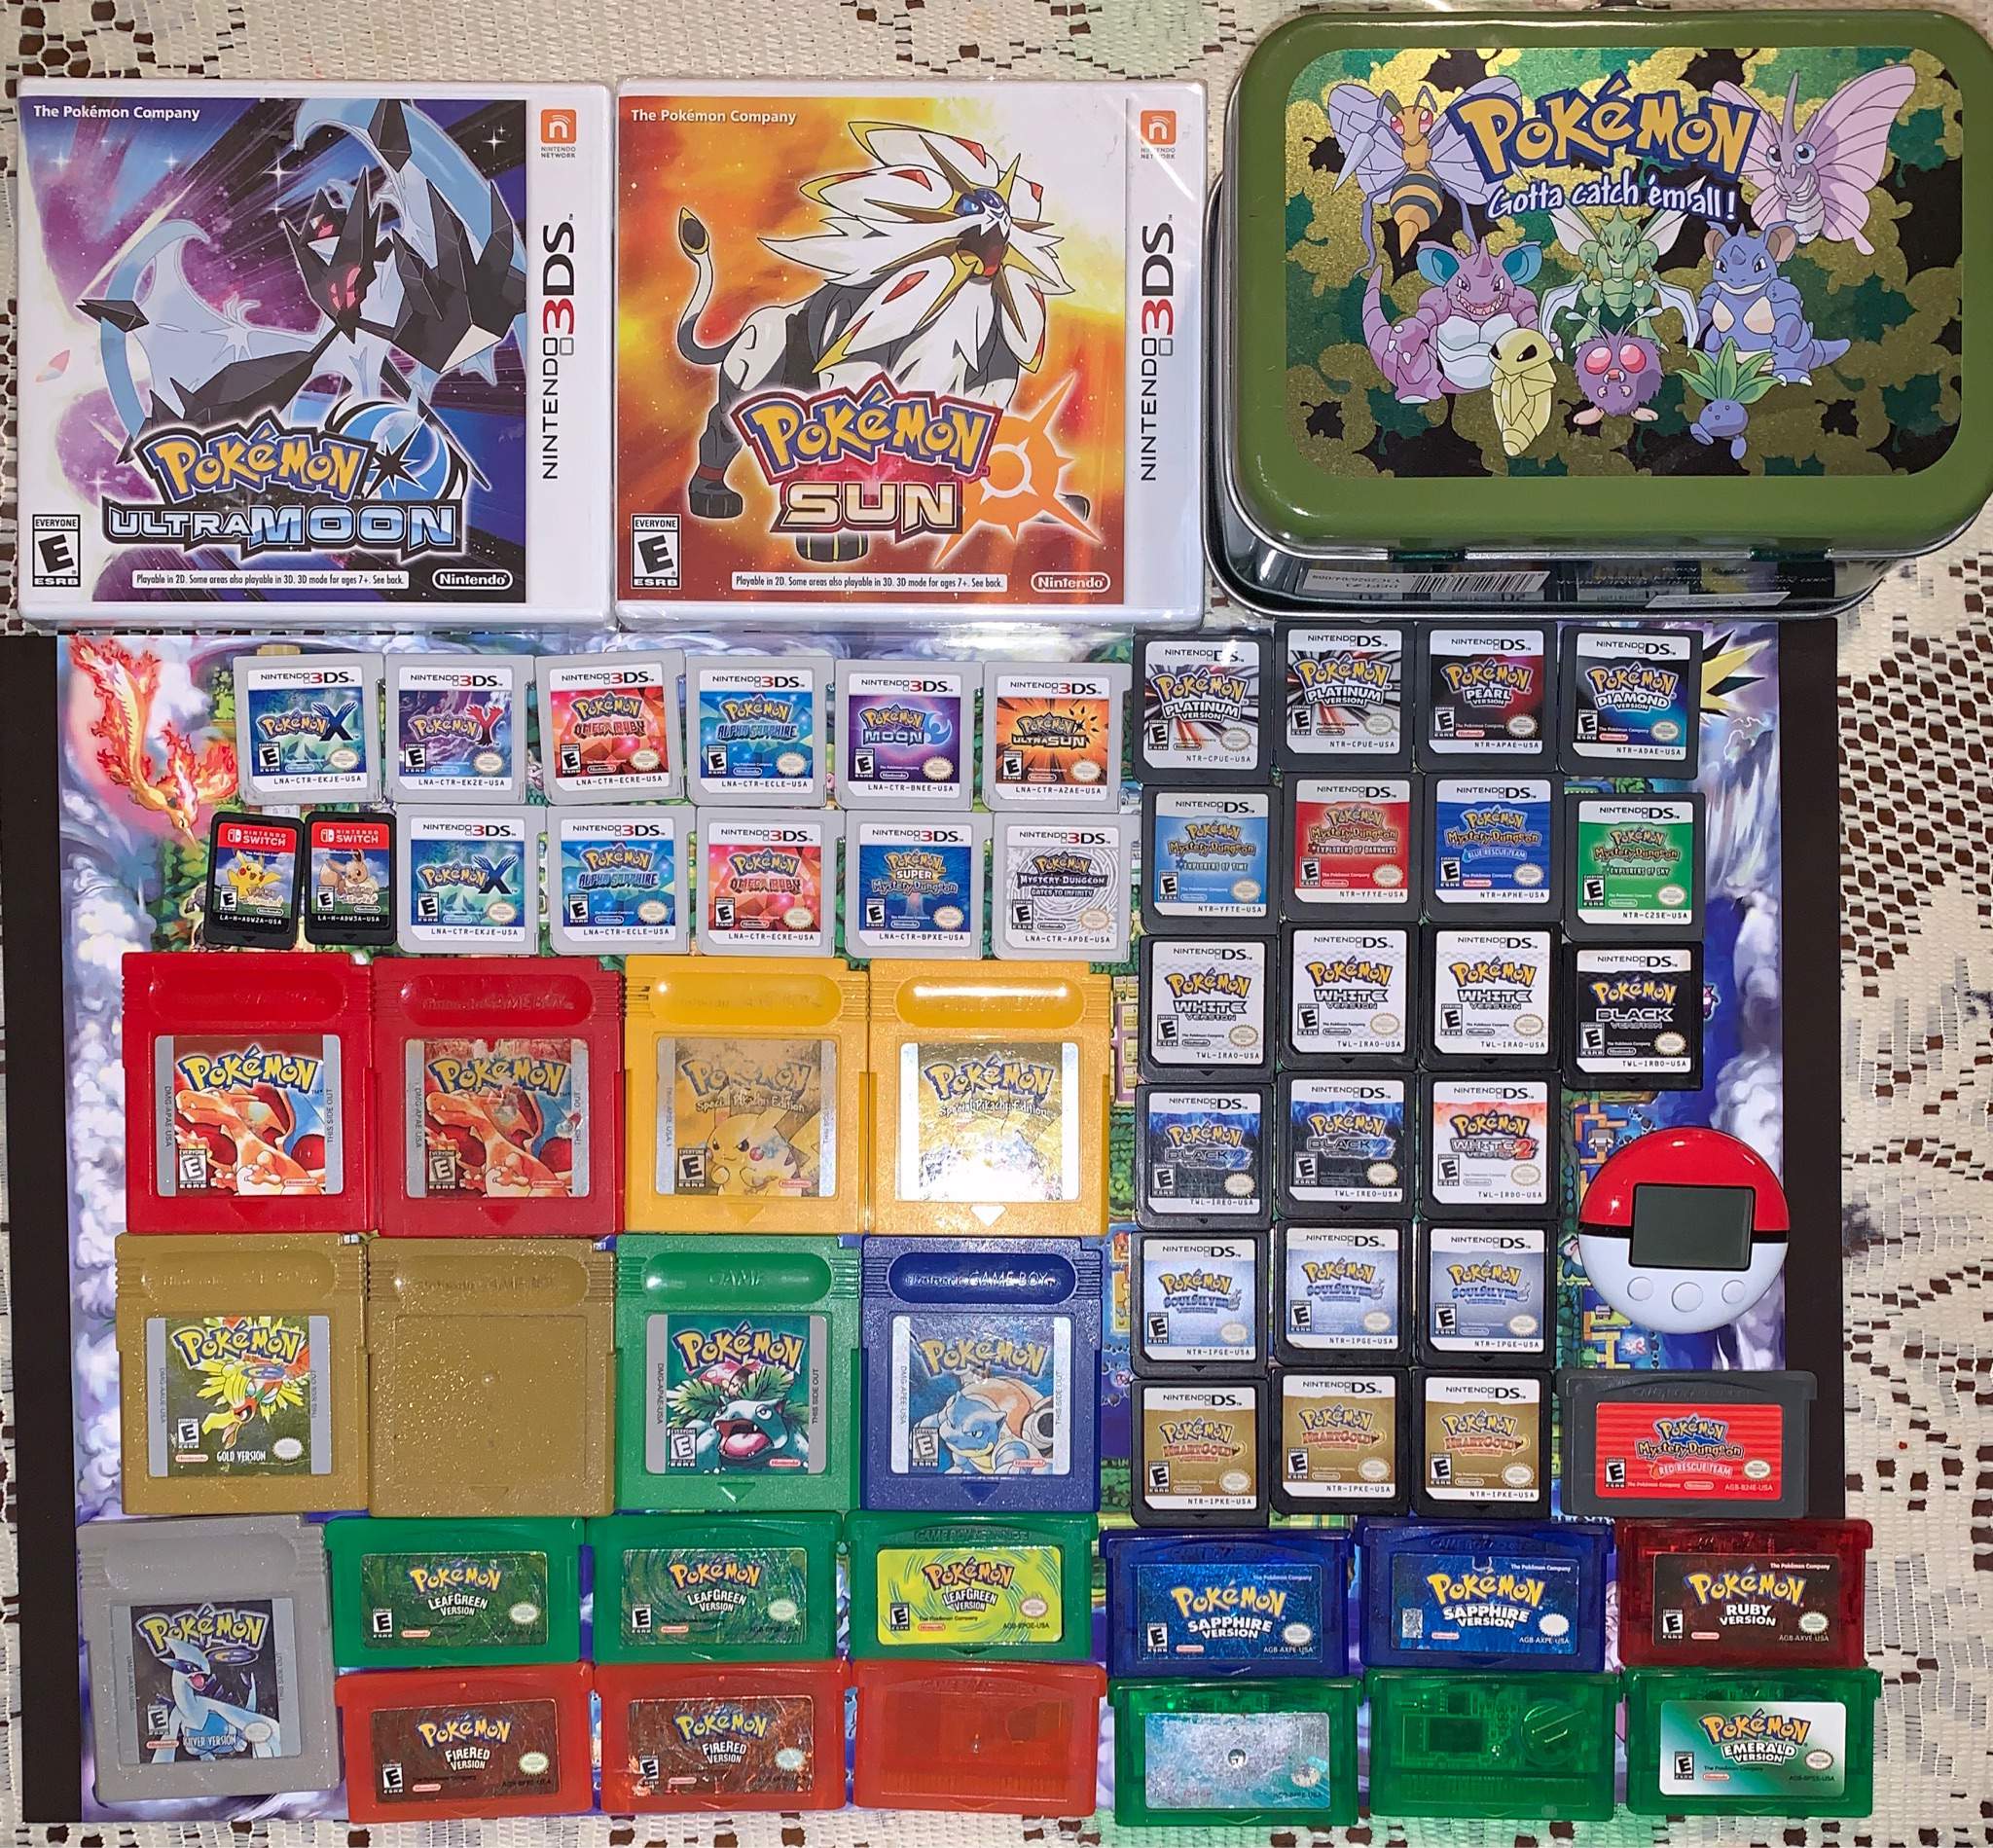 How Many Pokemon Games Do You Have? | Pokémon Amino